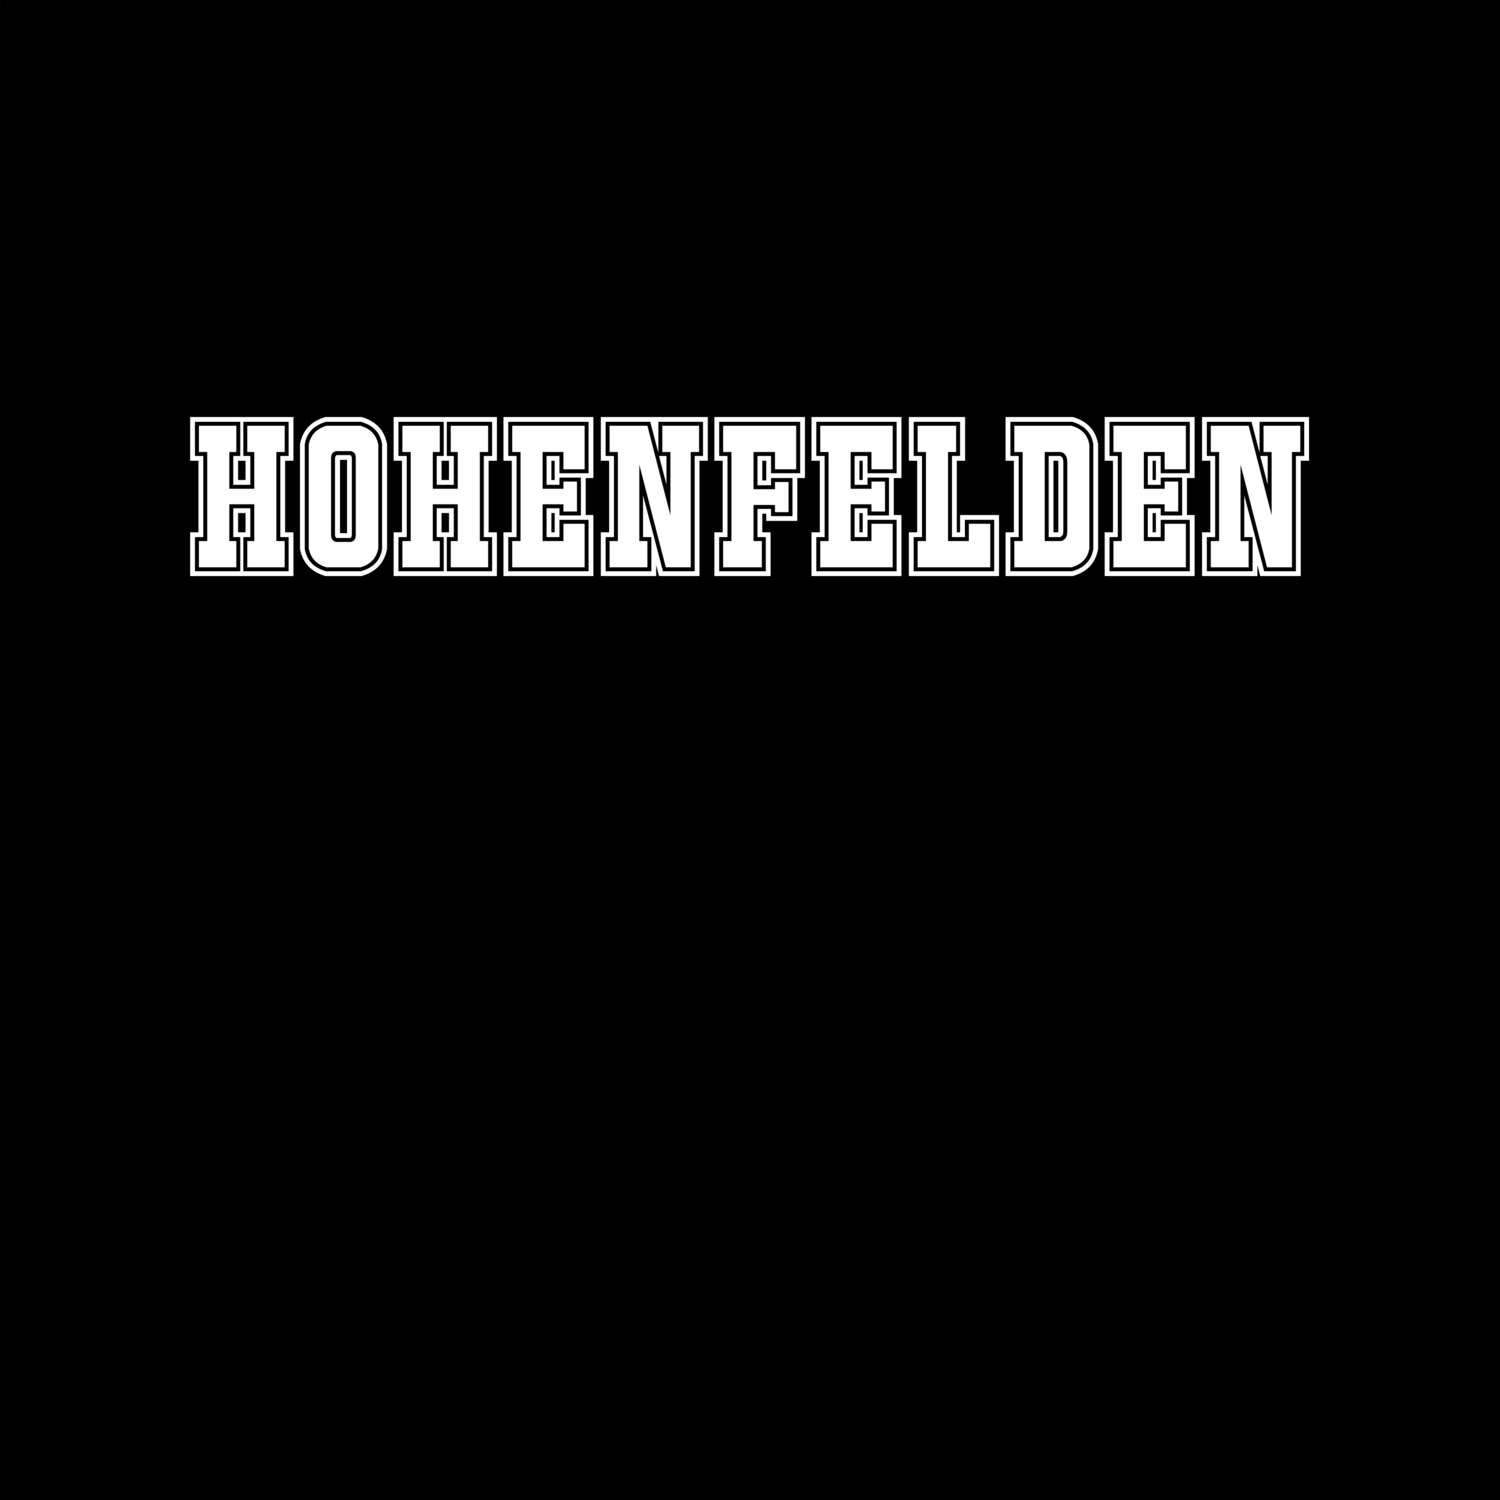 Hohenfelden T-Shirt »Classic«